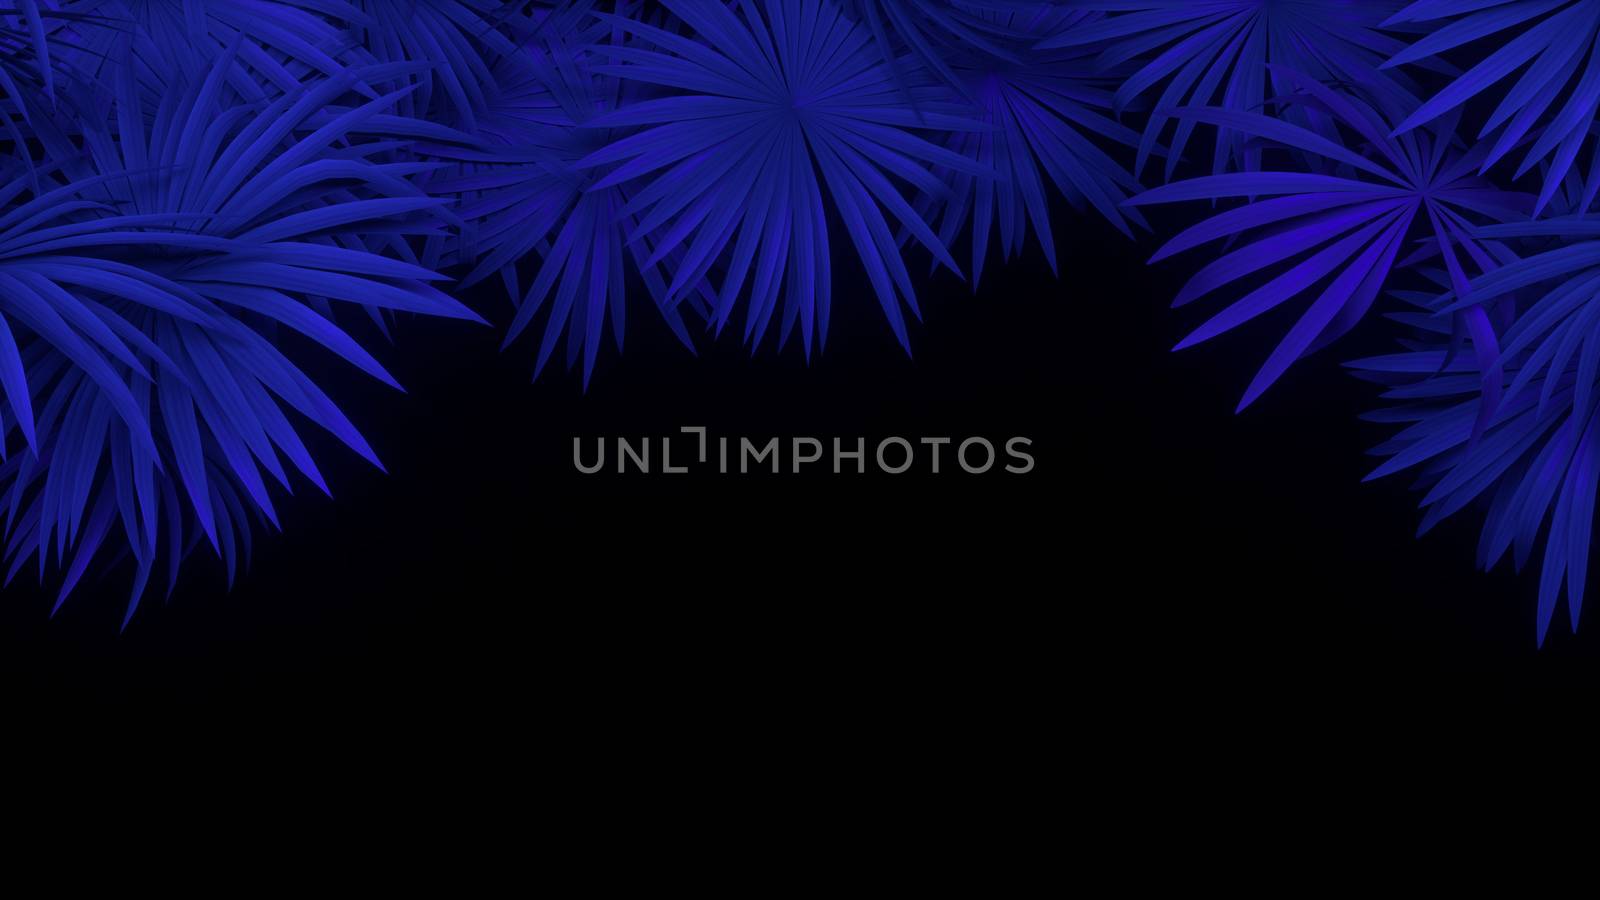 3d render of neon palm leaves on black background. Banner design. Retrowave, synthwave, vaporwave illustration. Party and sales concept